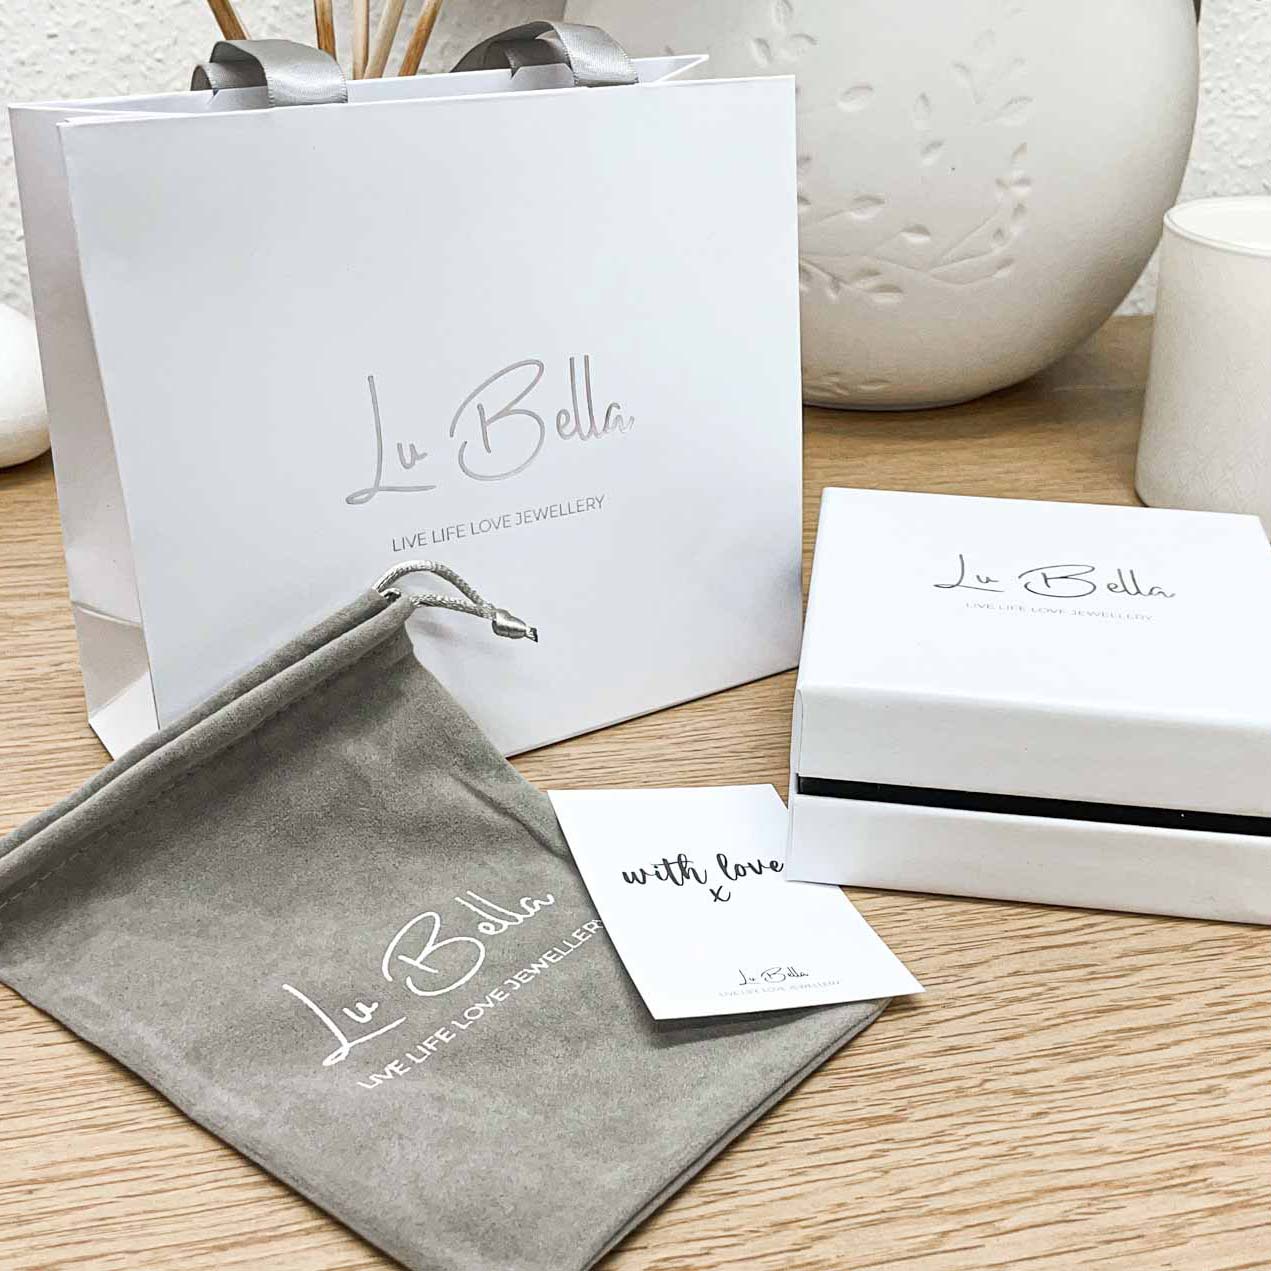 Lu Bella Packaging